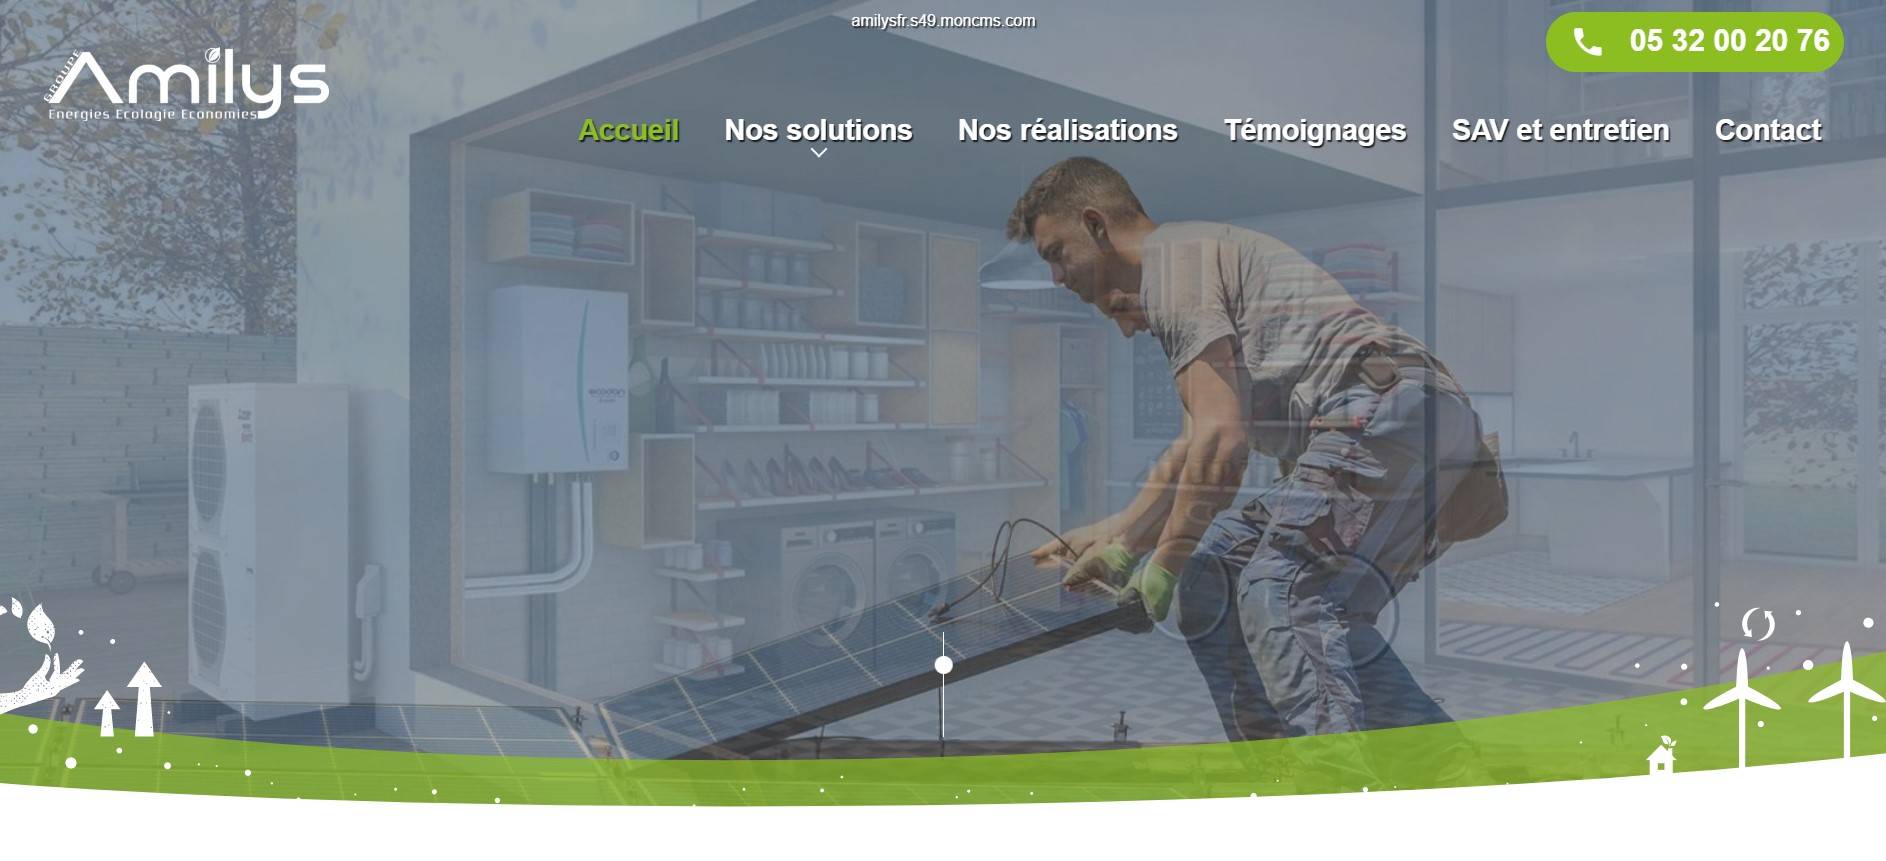 Spécialiste des énergies renouvelables en Gironde - Amilys